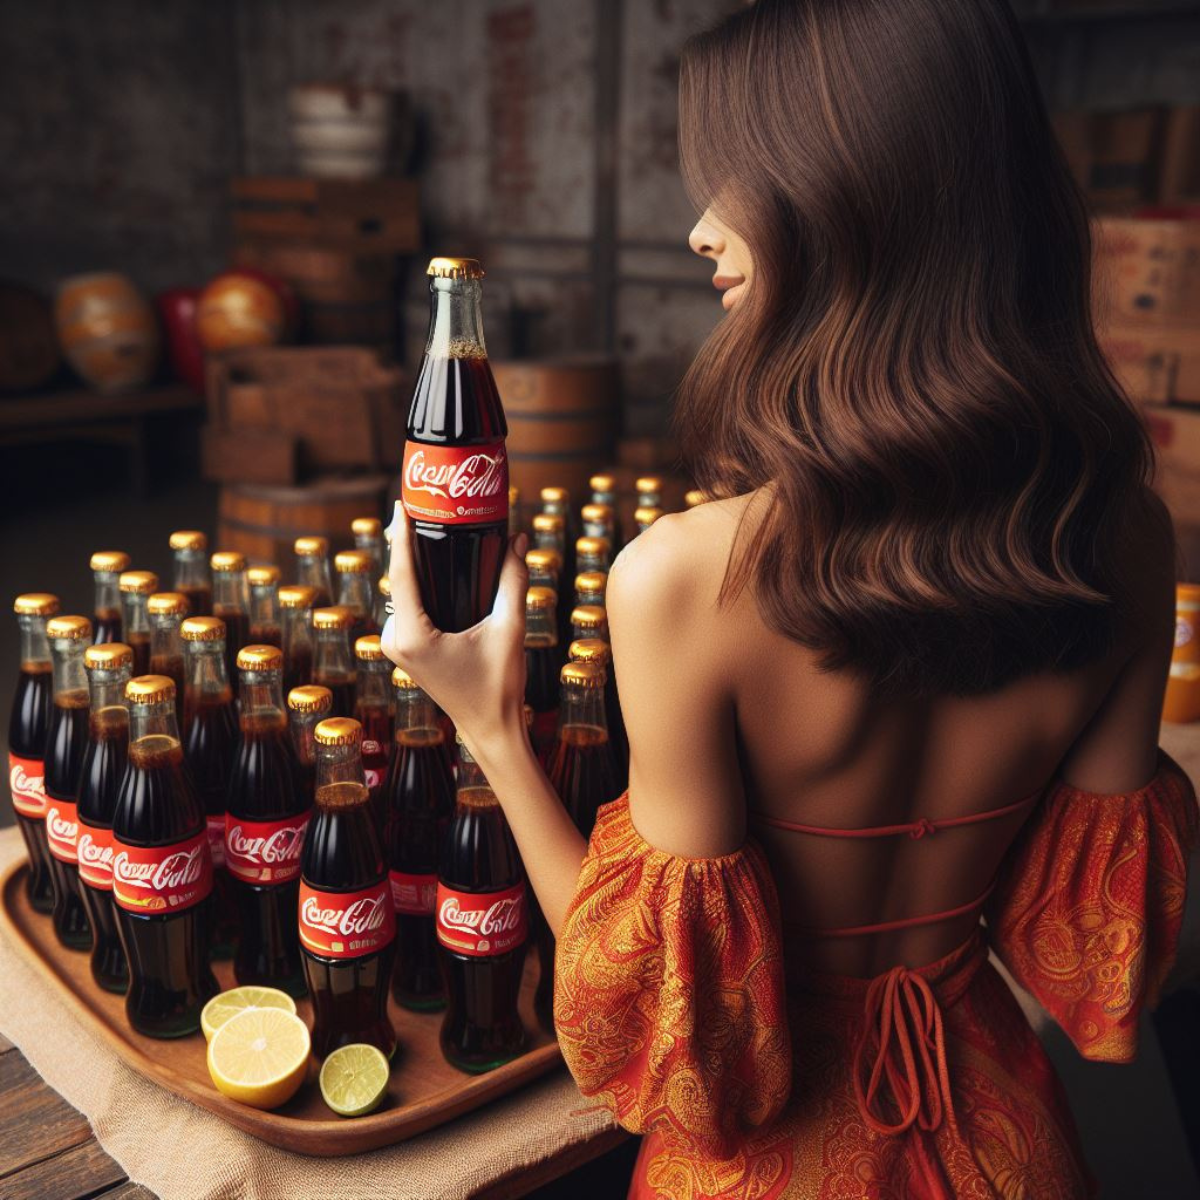 Convidada Levou Tubaína e Bebeu Coca-Cola